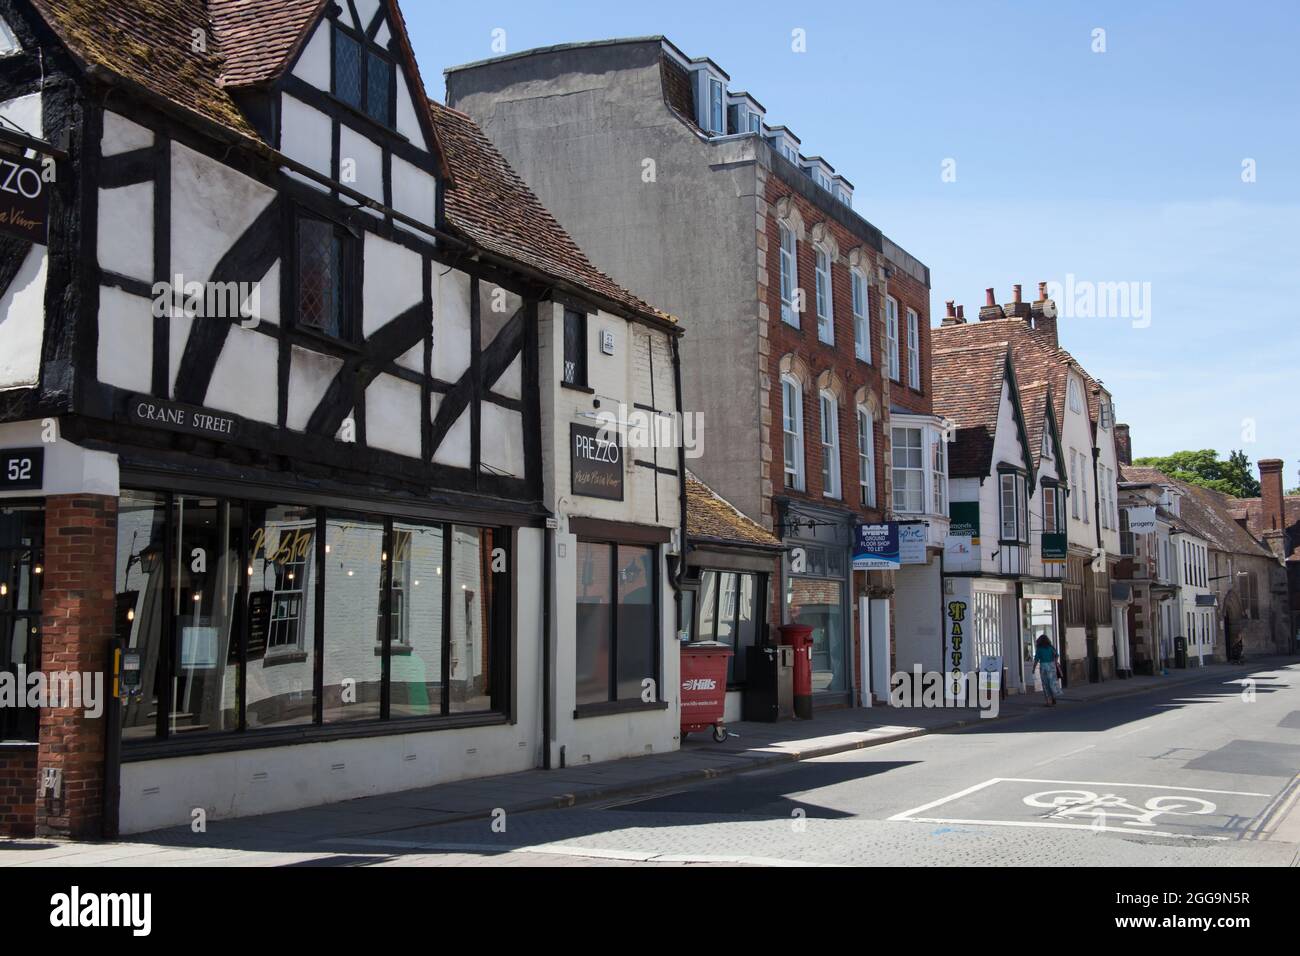 Views of Crane Street in Salisbury, Wiltshire in the UK Stock Photo